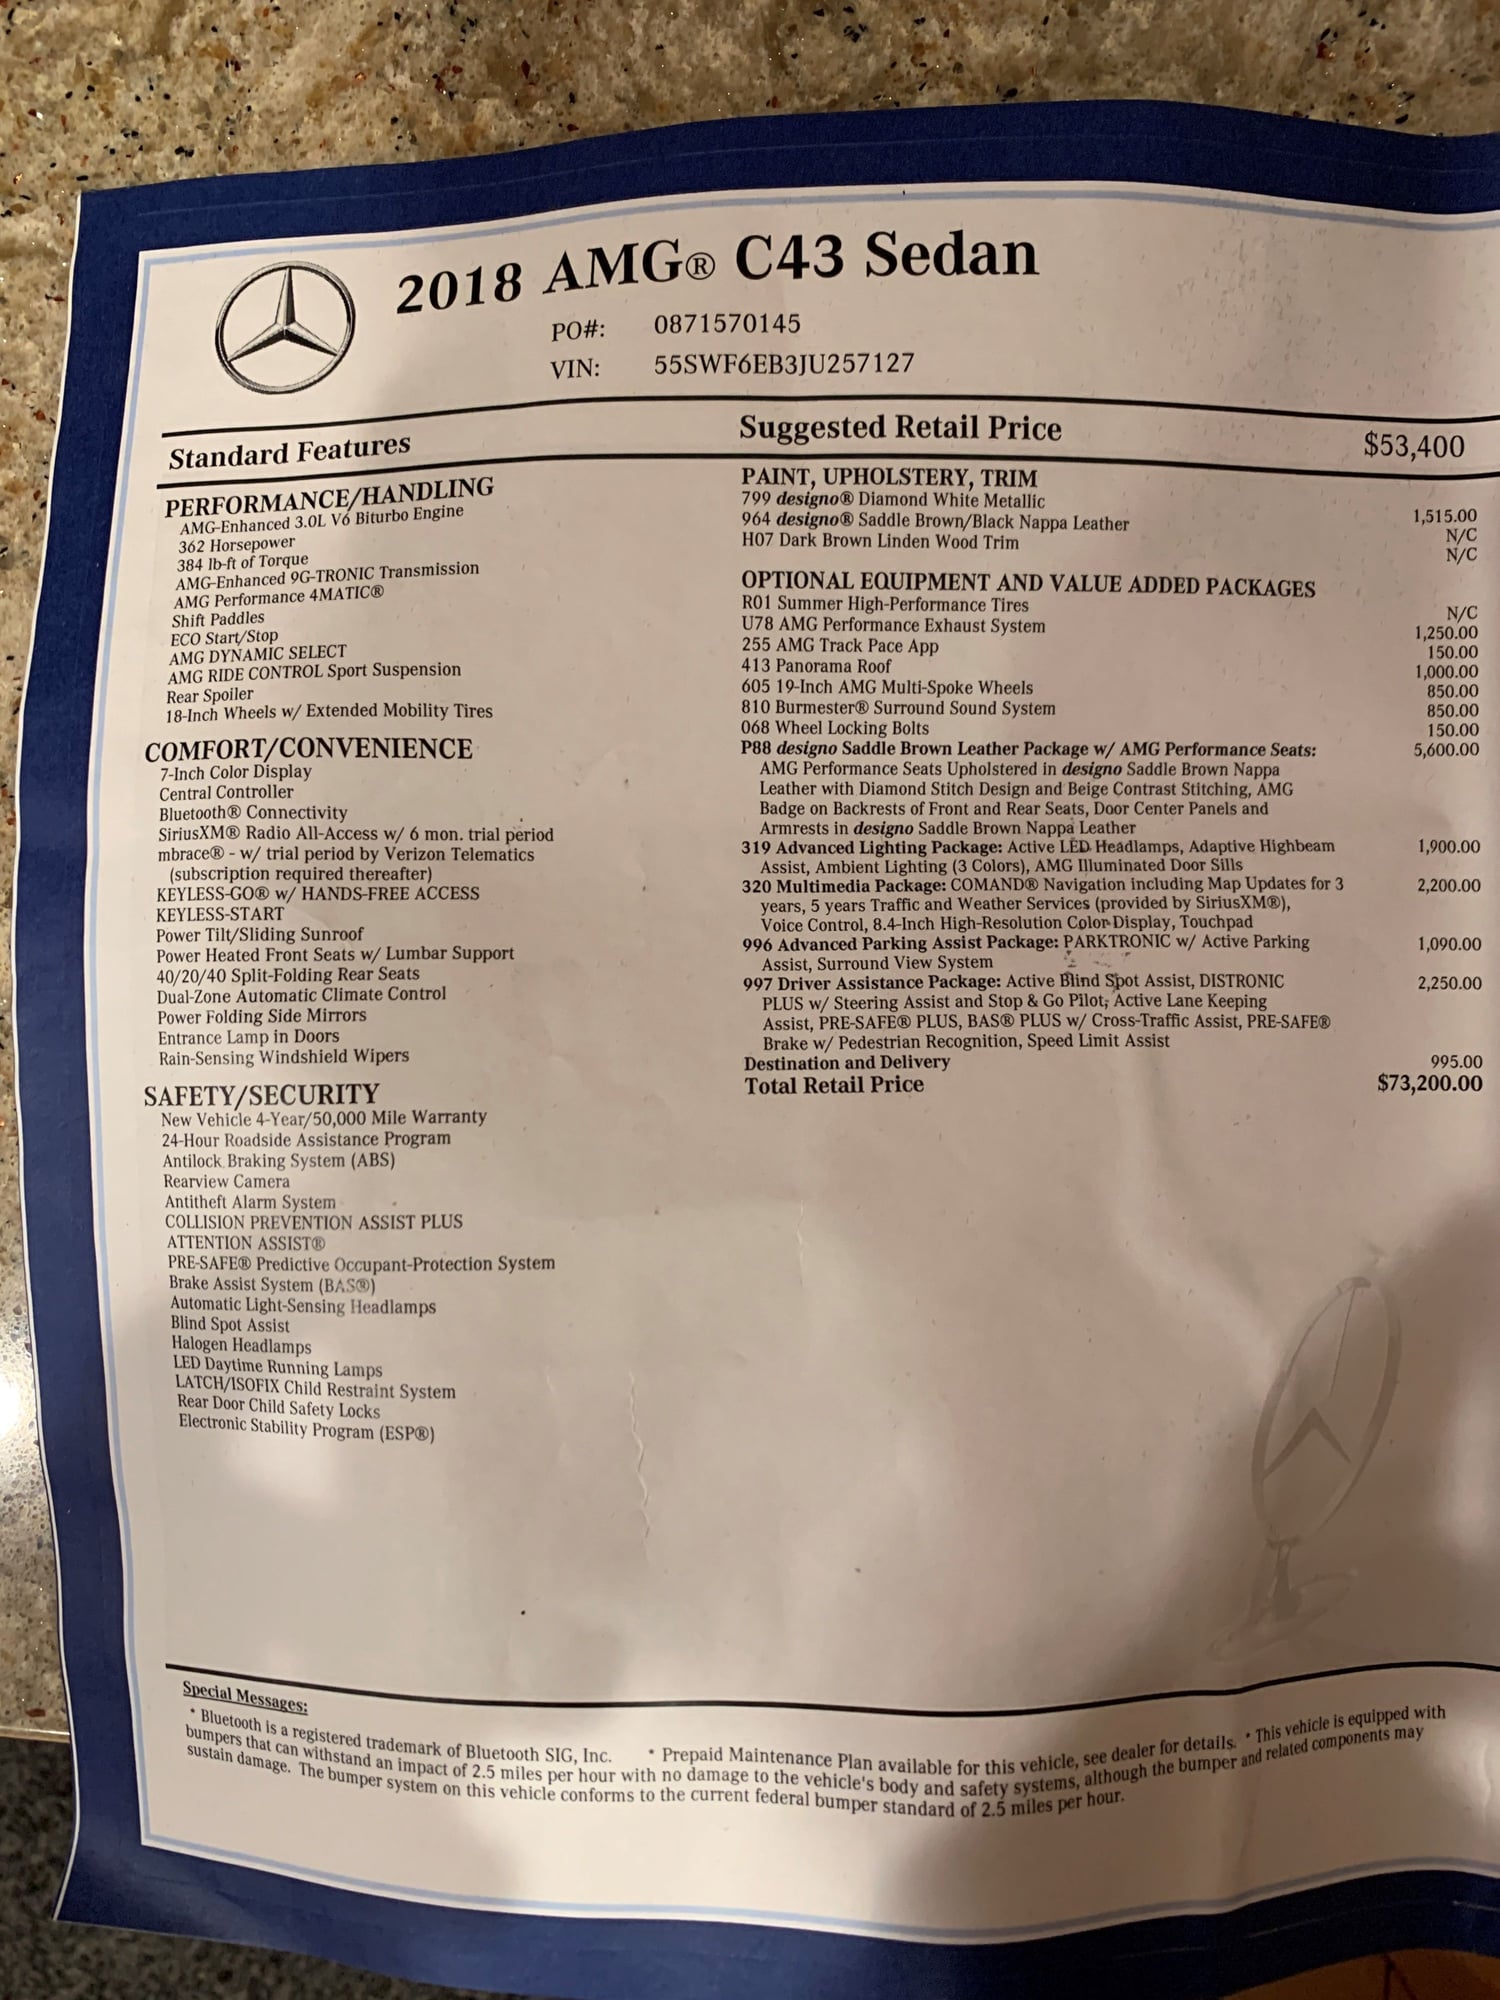 2018 Mercedes-Benz C43 AMG - 2018 C43 AMG Sedan - Used - VIN 55SWF6EB3JU257127 - 13,500 Miles - 6 cyl - AWD - Sedan - Other - Alameda, CA 94502, United States